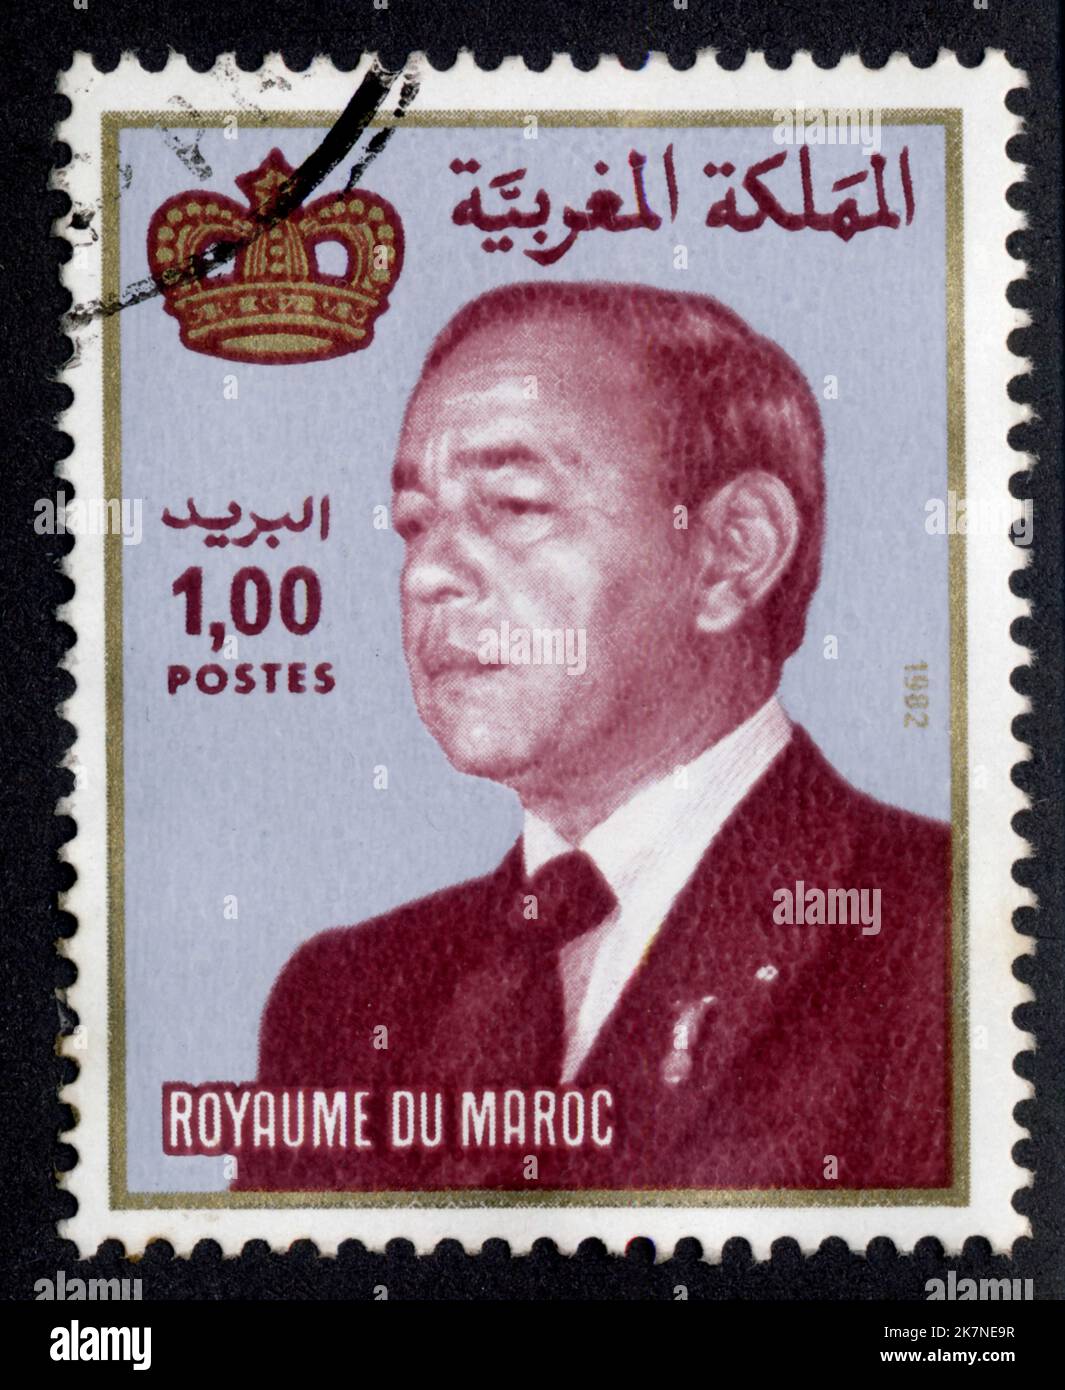 Timbre oblitéré Royaume du Maroc, Postes, 1,00, 1982 Foto Stock